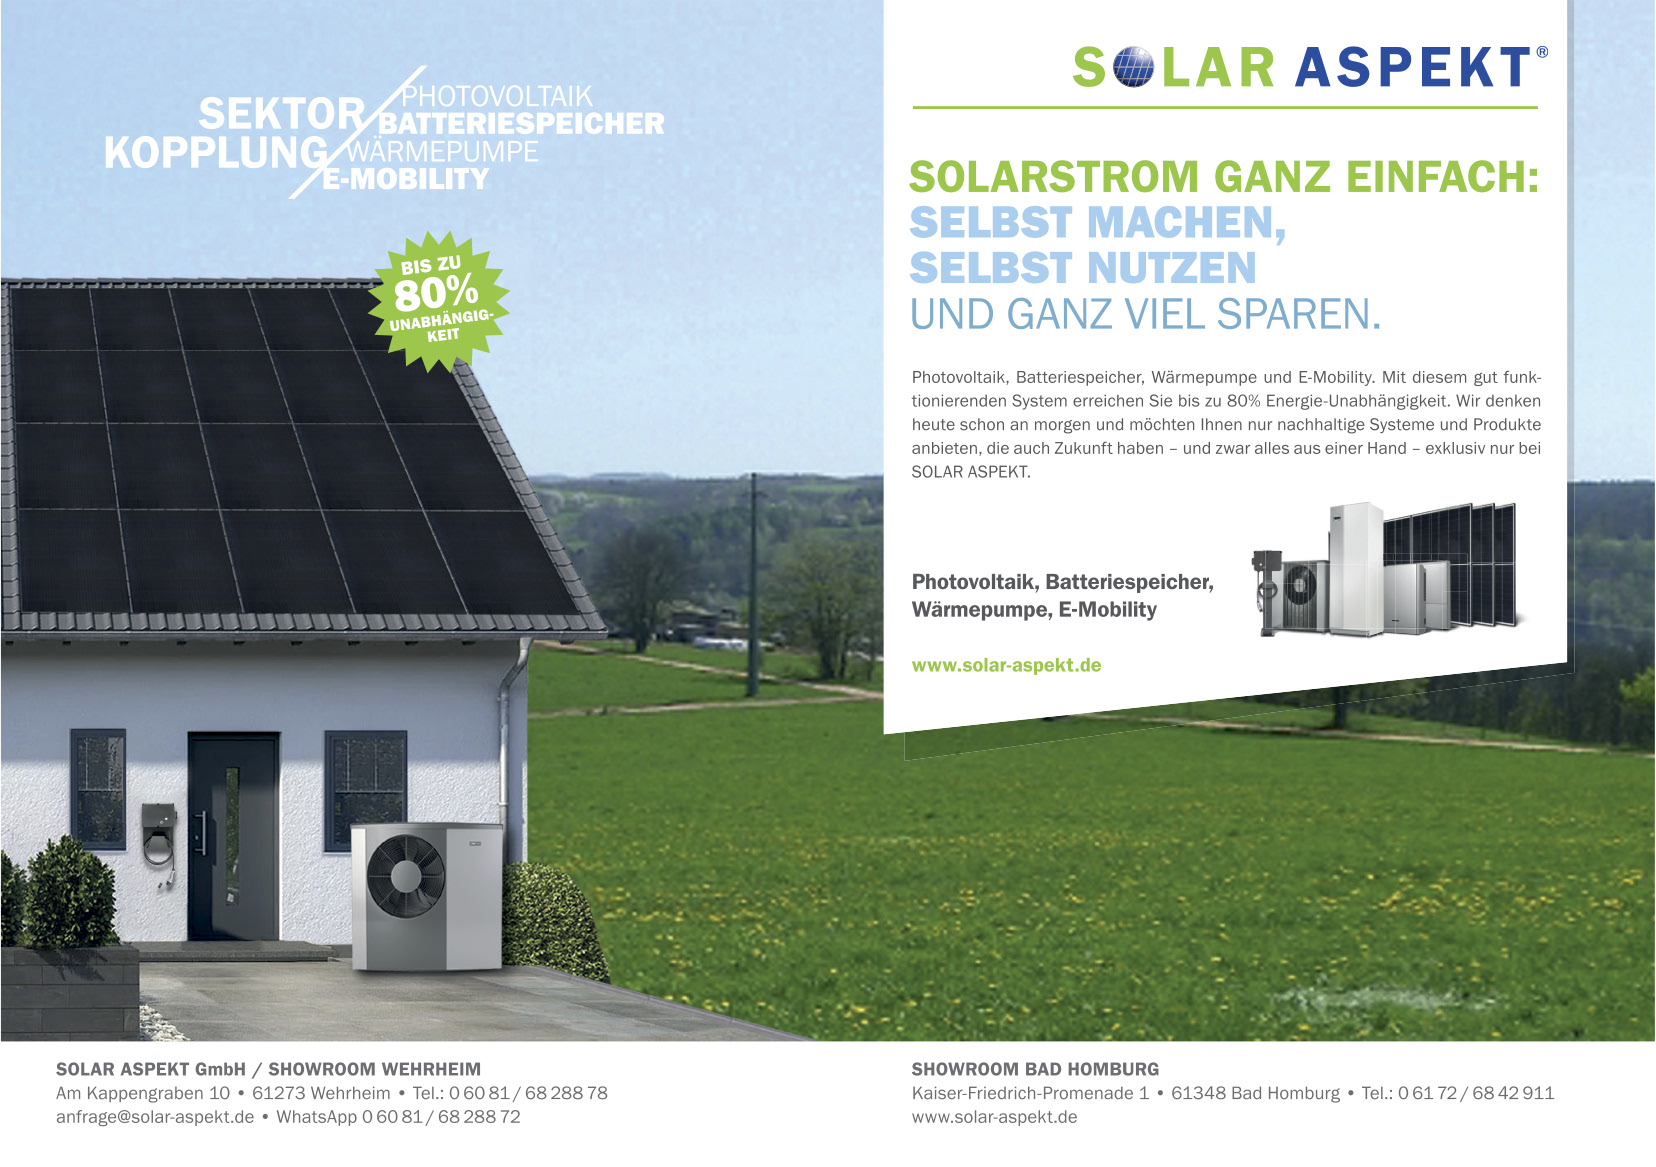 www.solar-aspekt.de